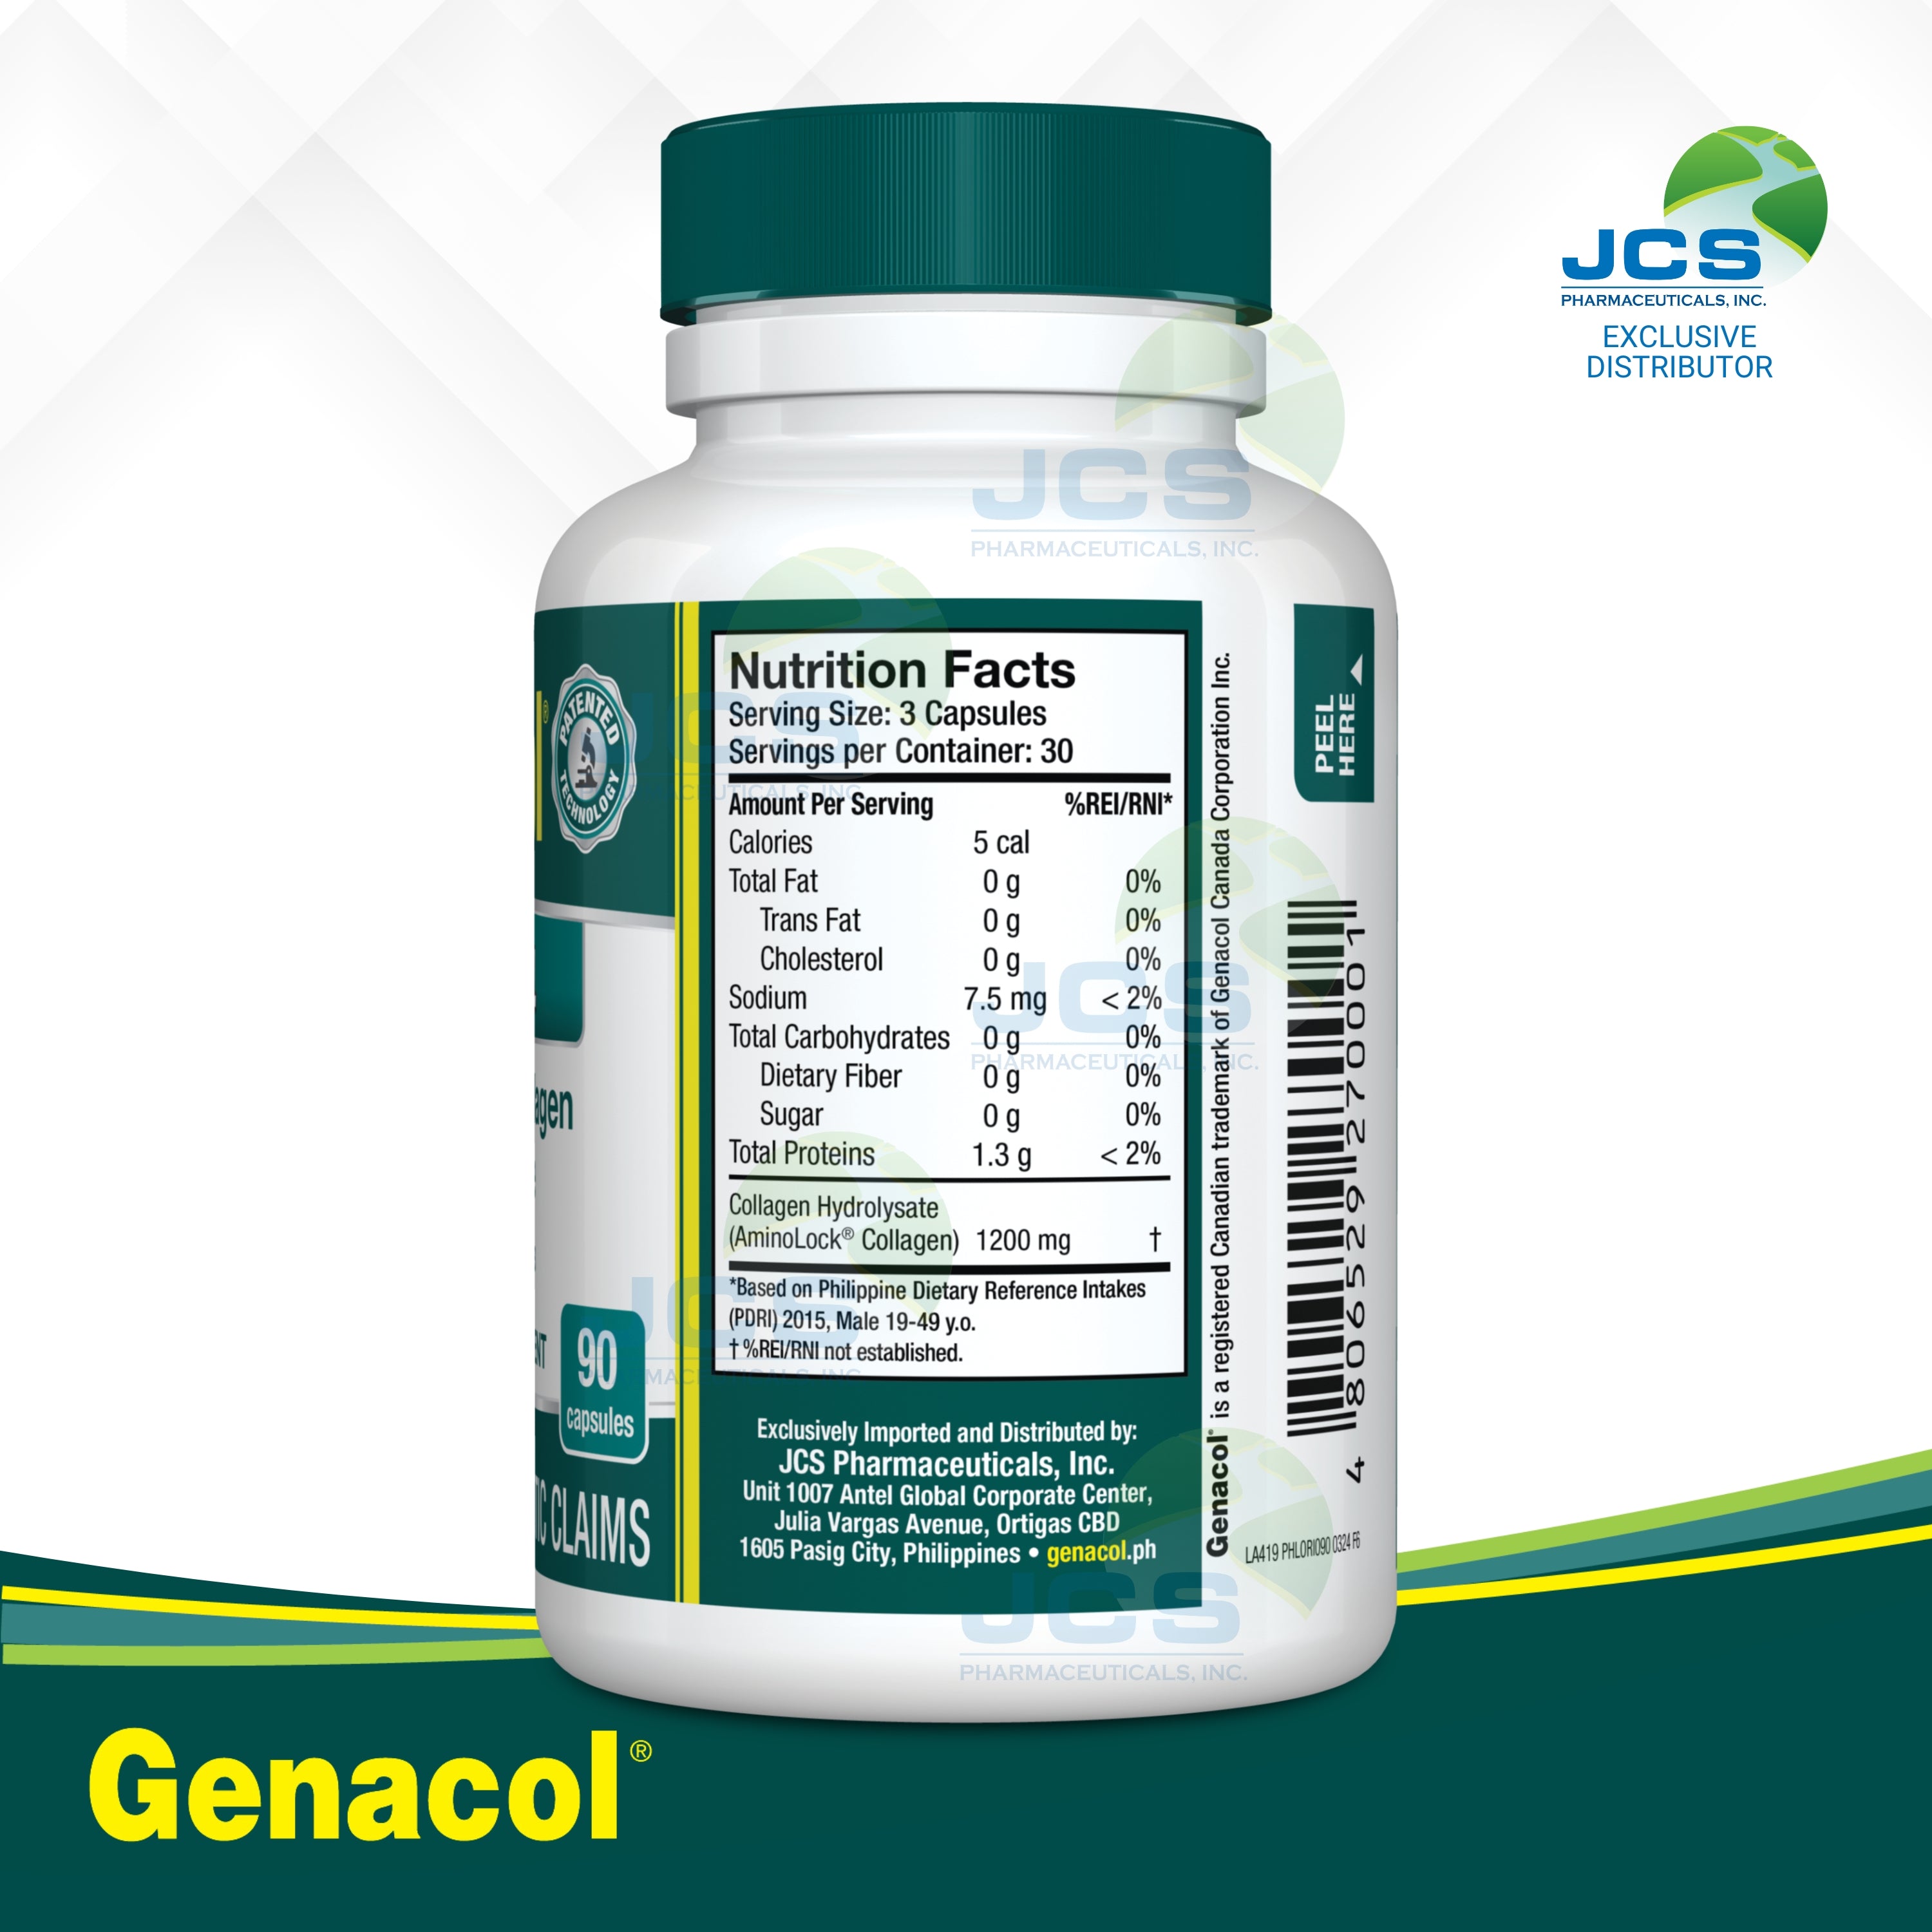 Genacol Original AminoLock Collagen 90 Capsules